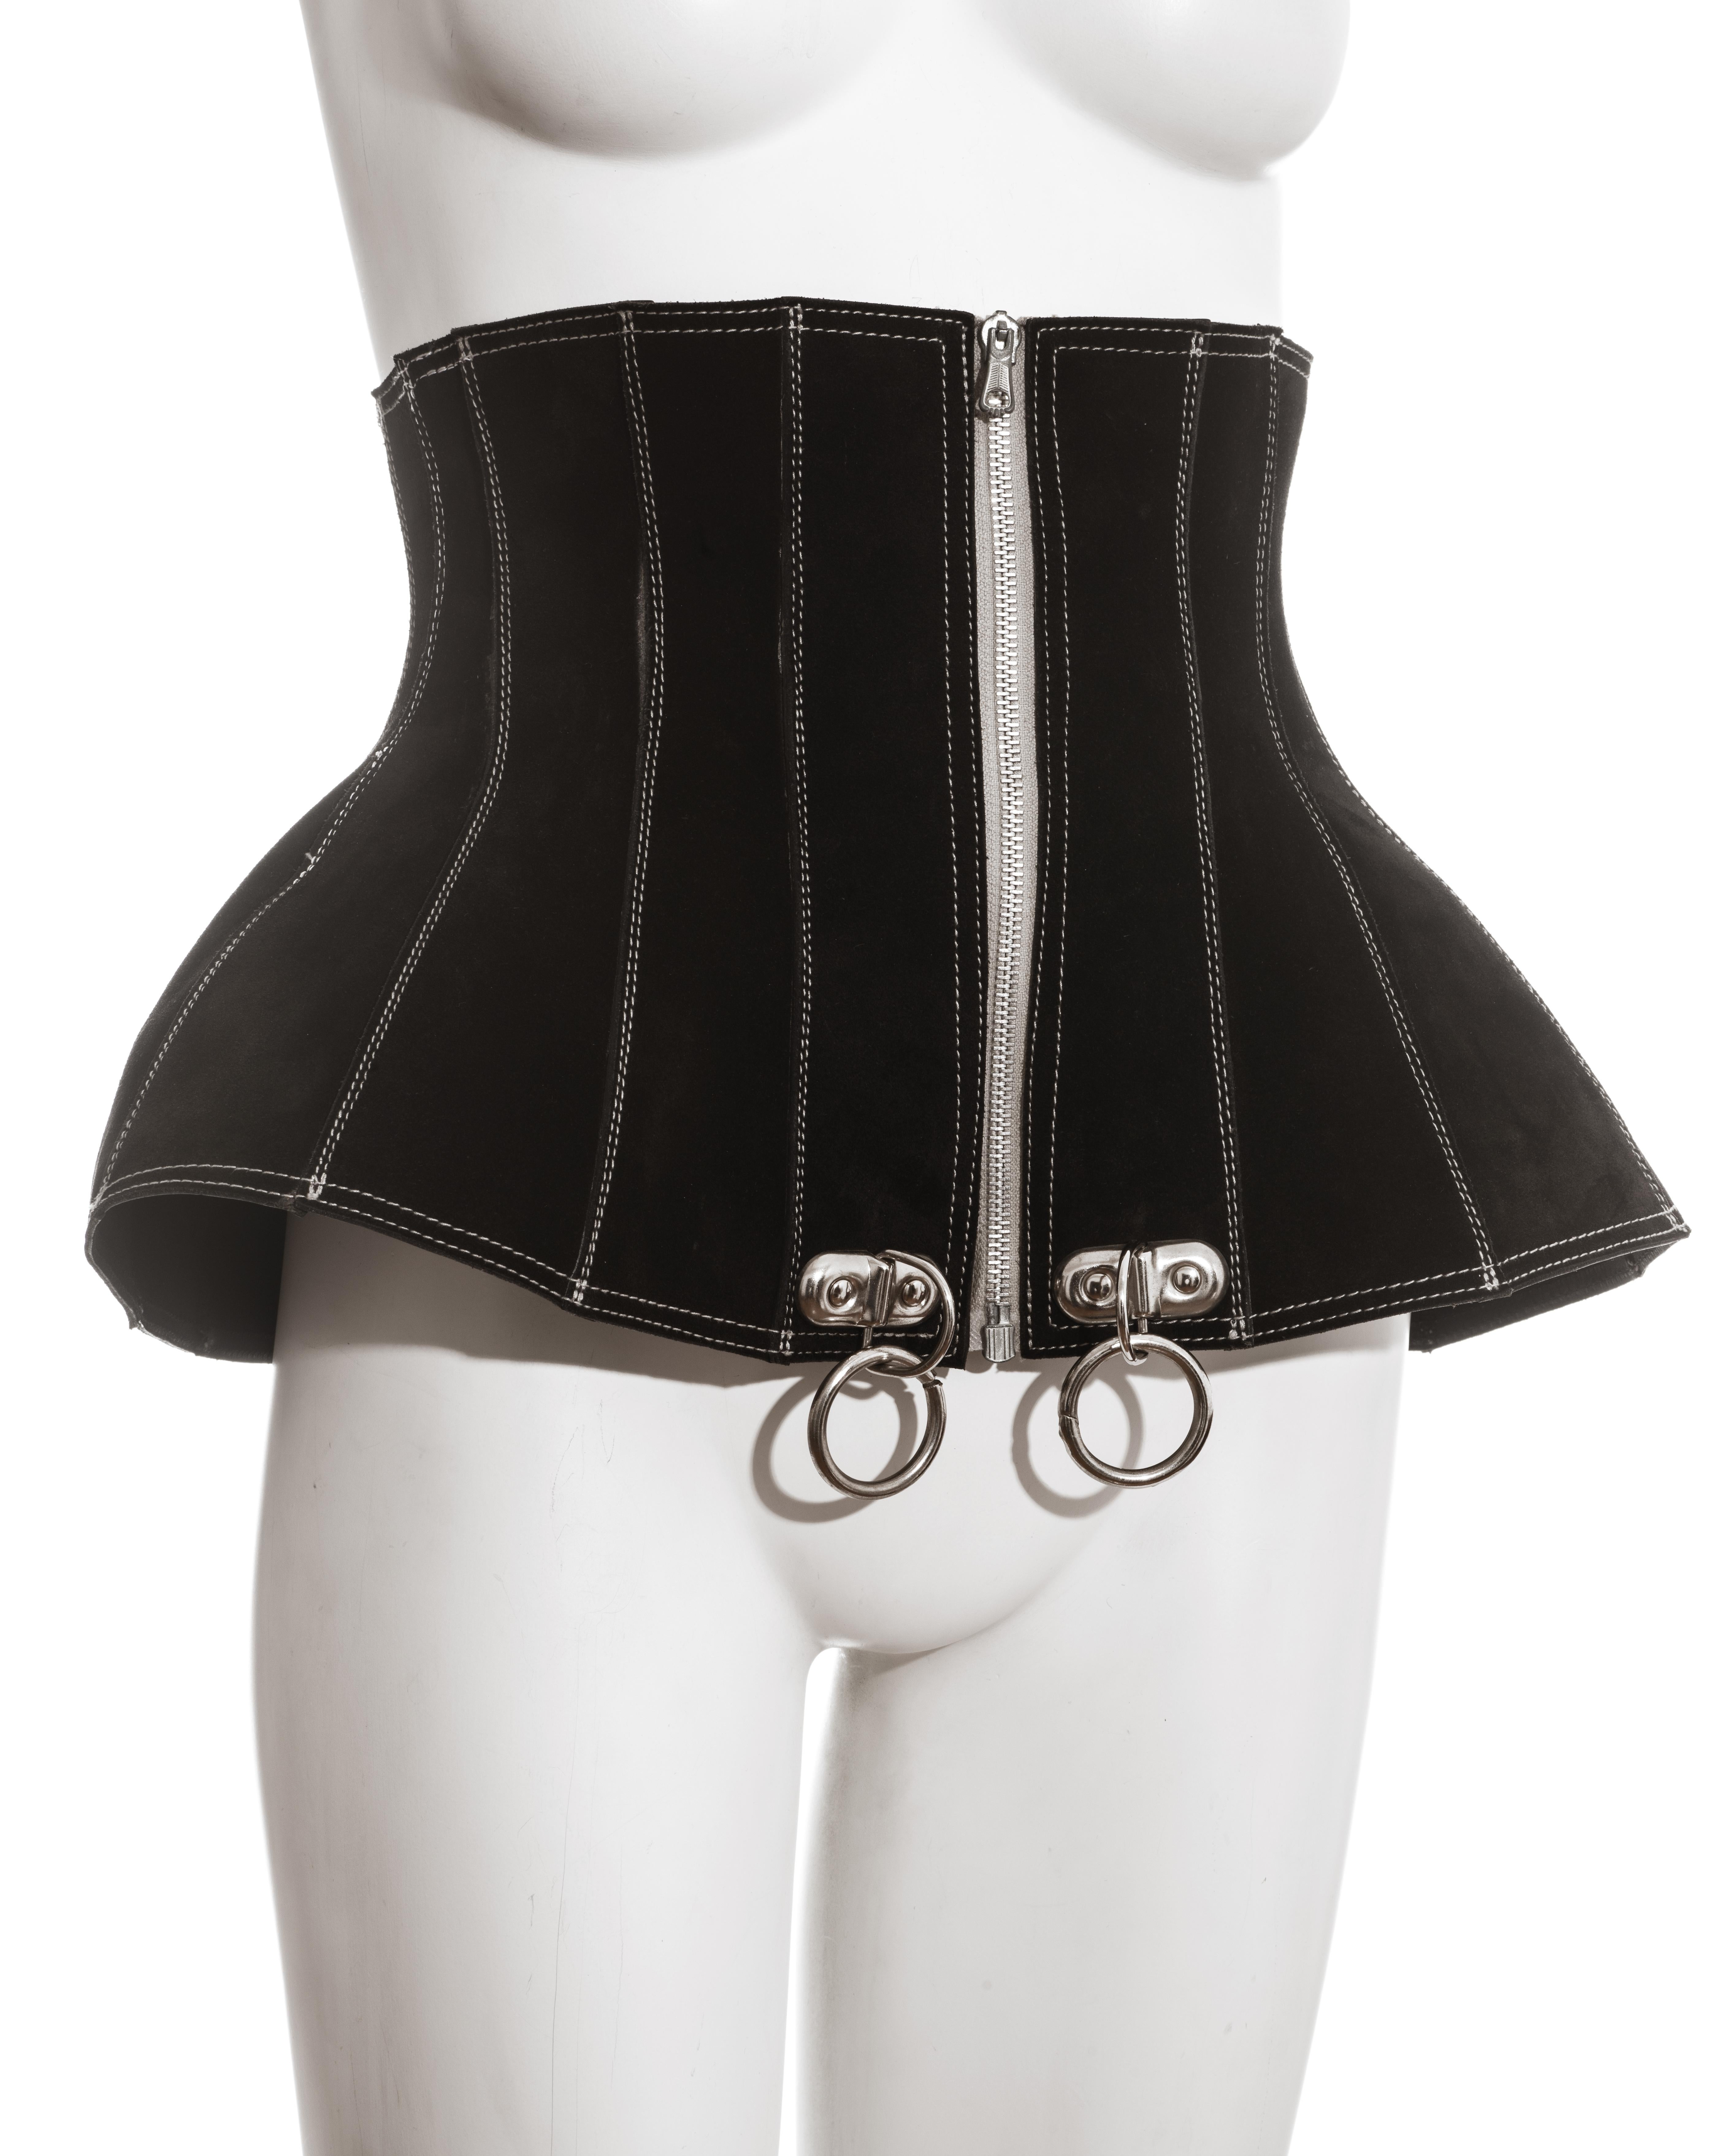 Black Jean Paul Gaultier black suede zip up corset, fw 1987